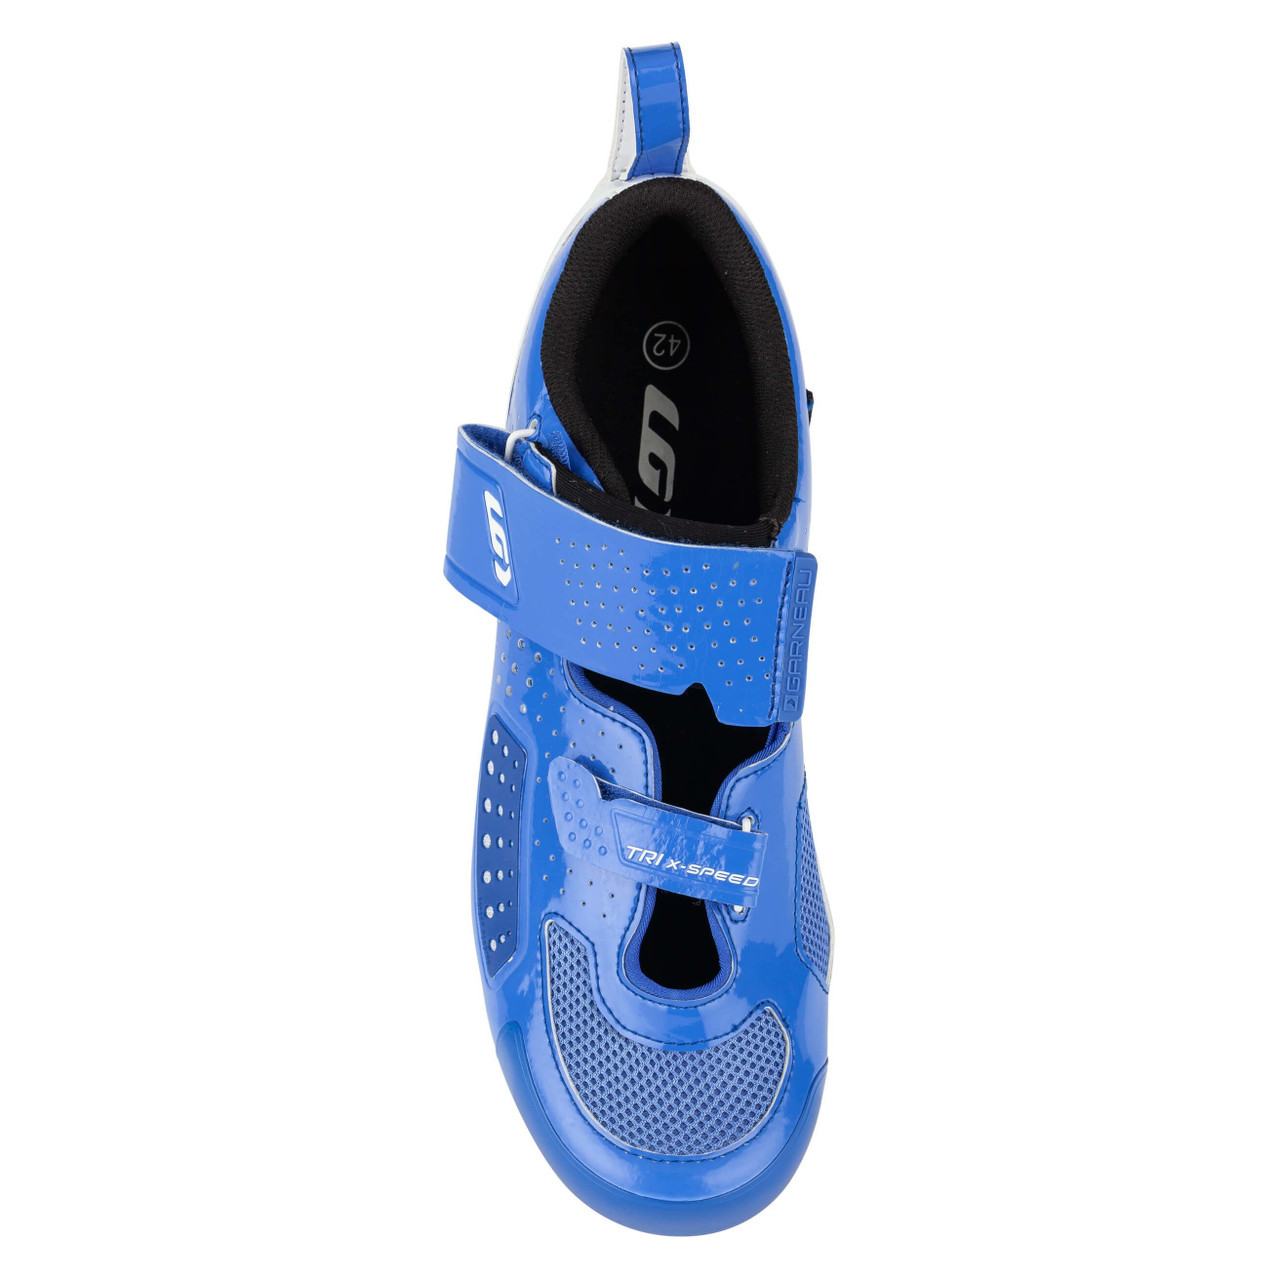 Garneau Men's Tri X-Lite III Shoes